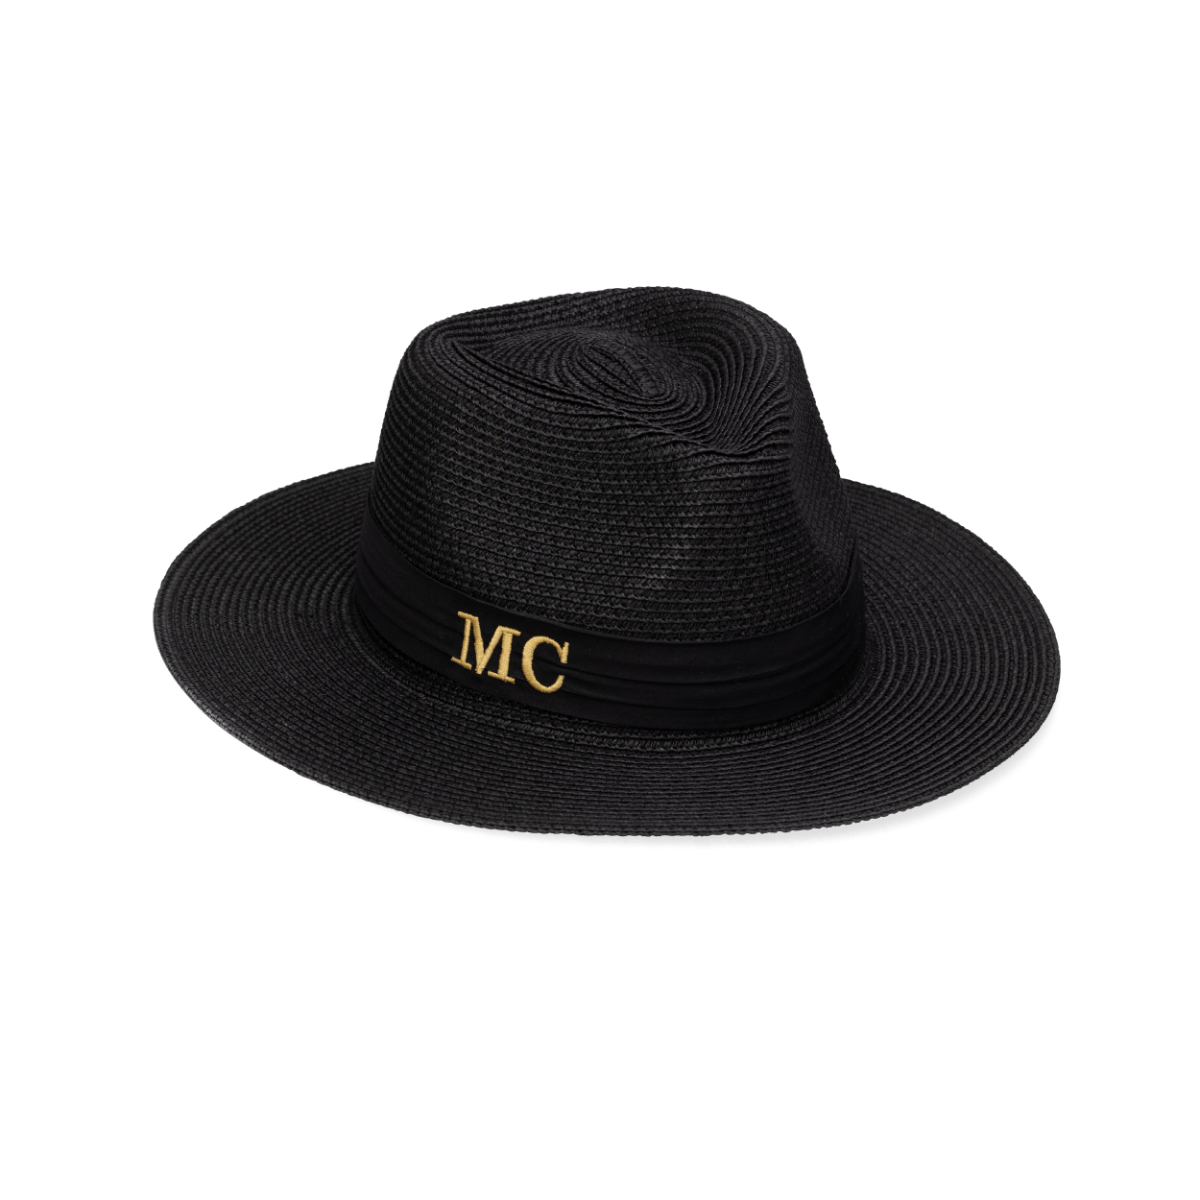 Pre-order: Brigitte Monogram Straw Hat